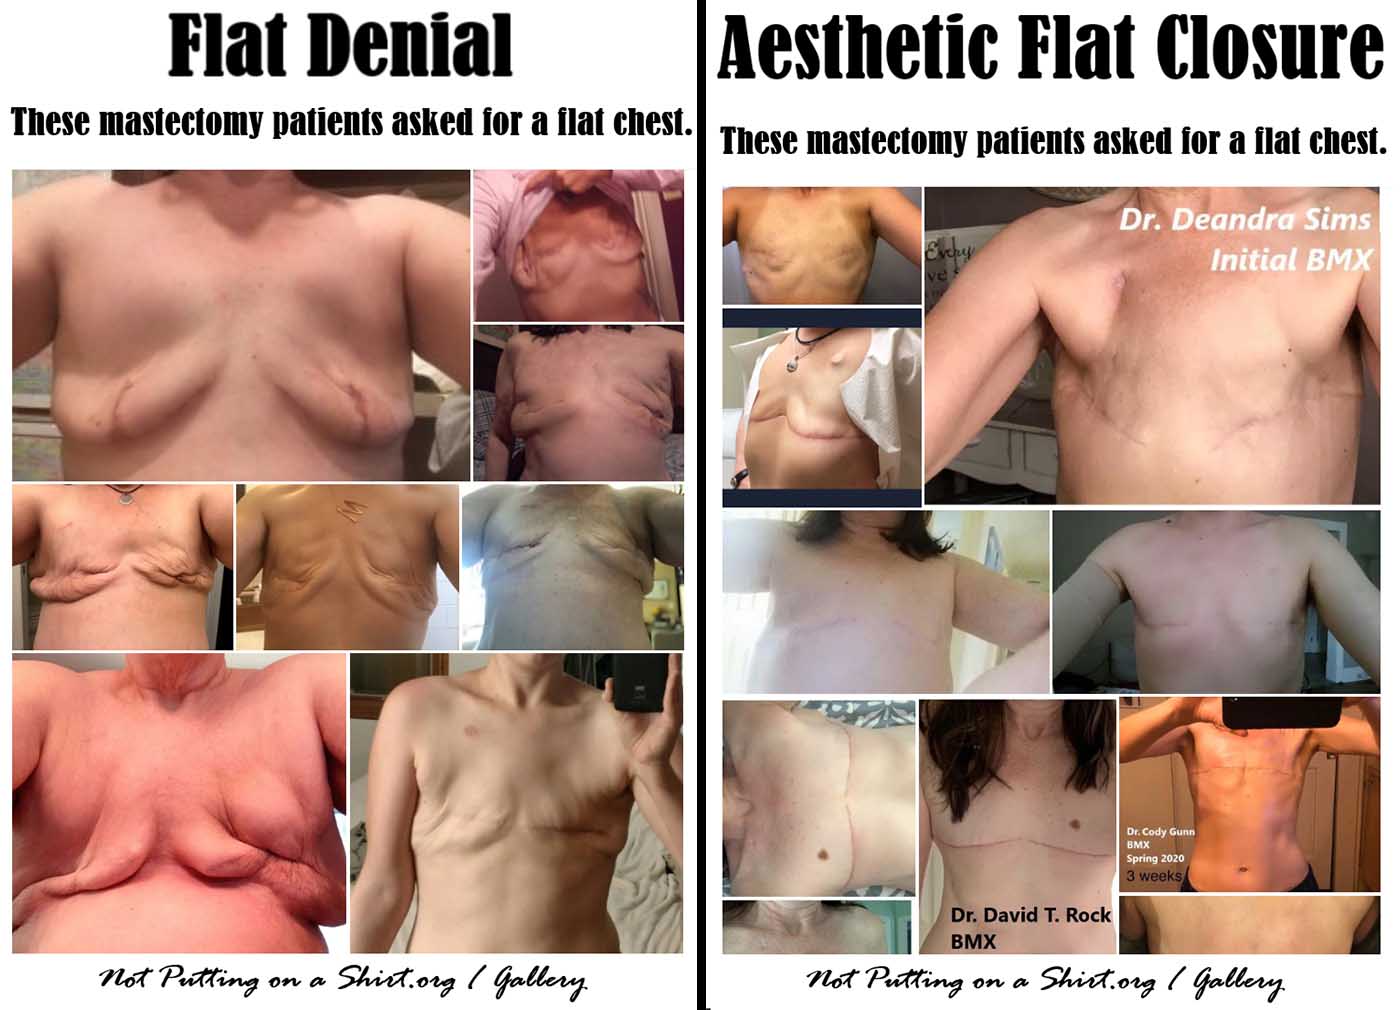 Aesthetic Flat Closure, single 10.0 - Empowered Mastectomy